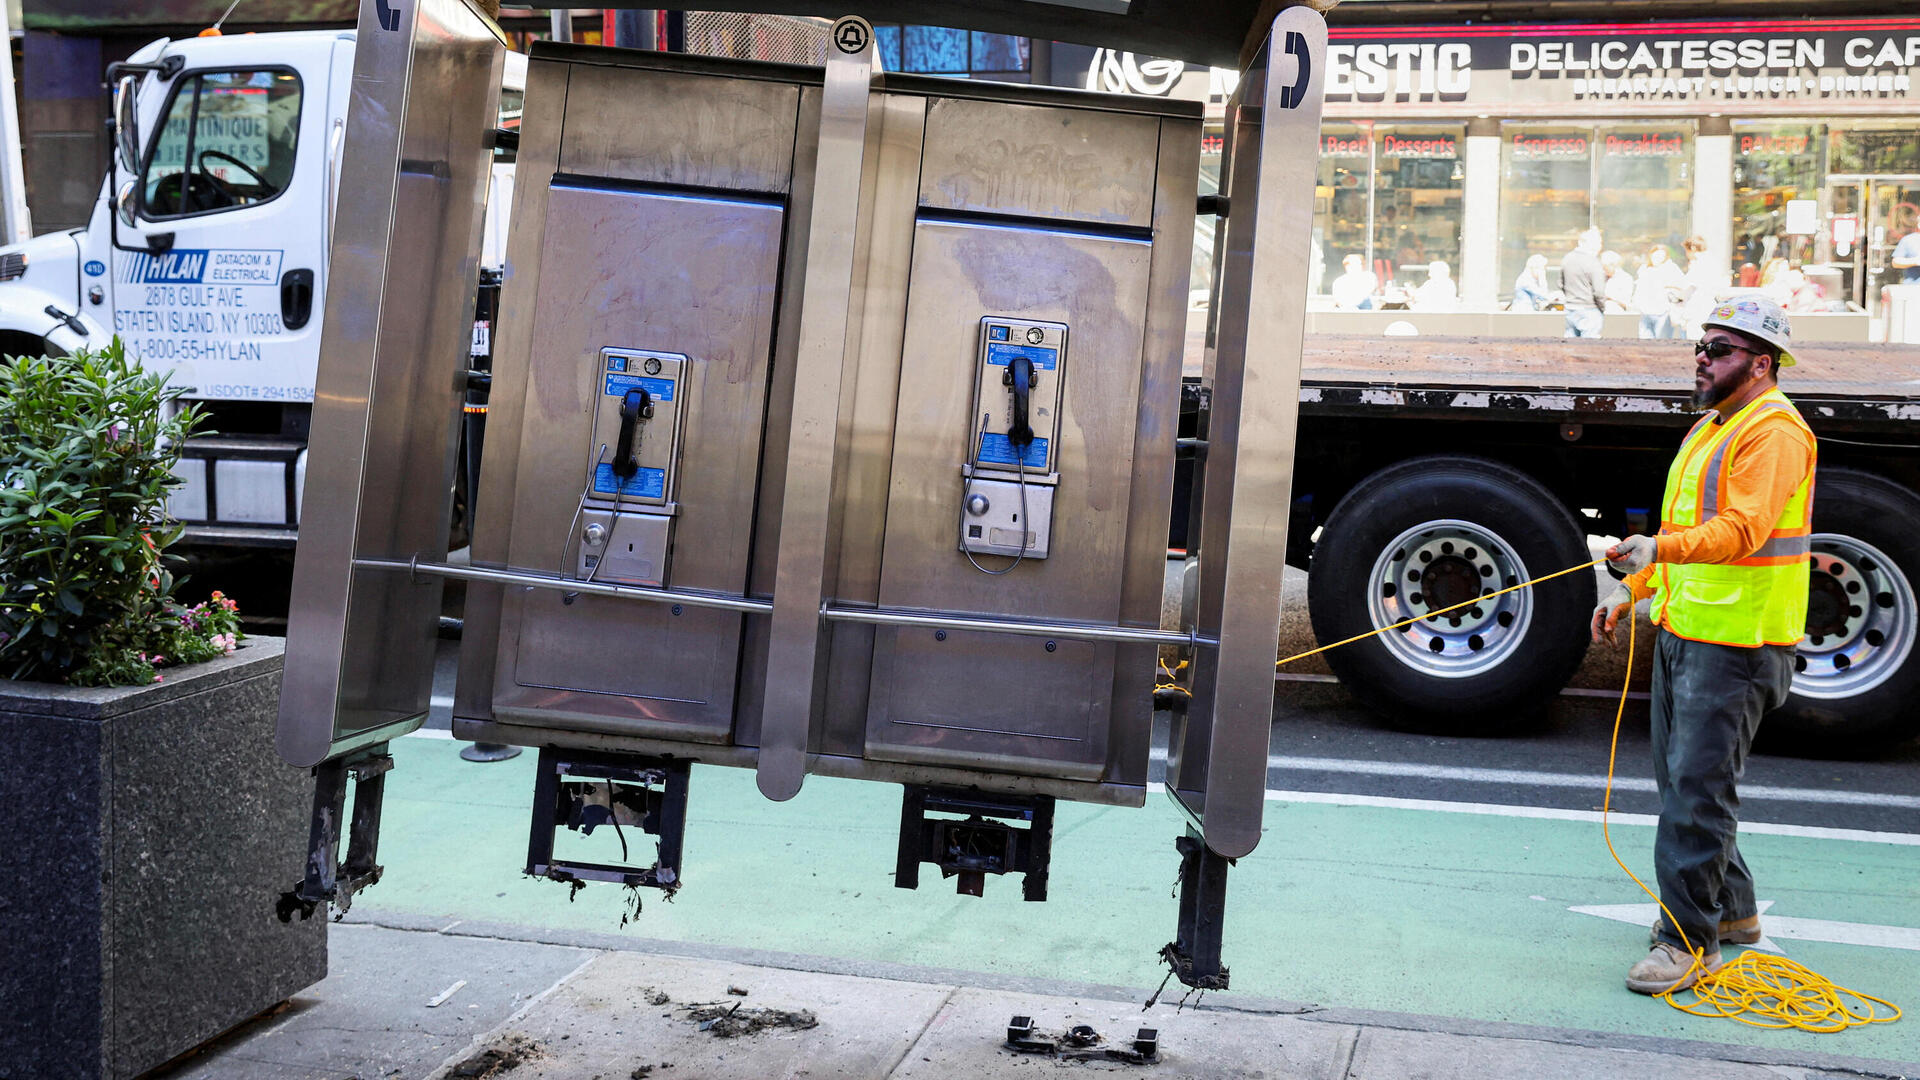 הסרת הטלפון הציבורי האחרון בניו יורק